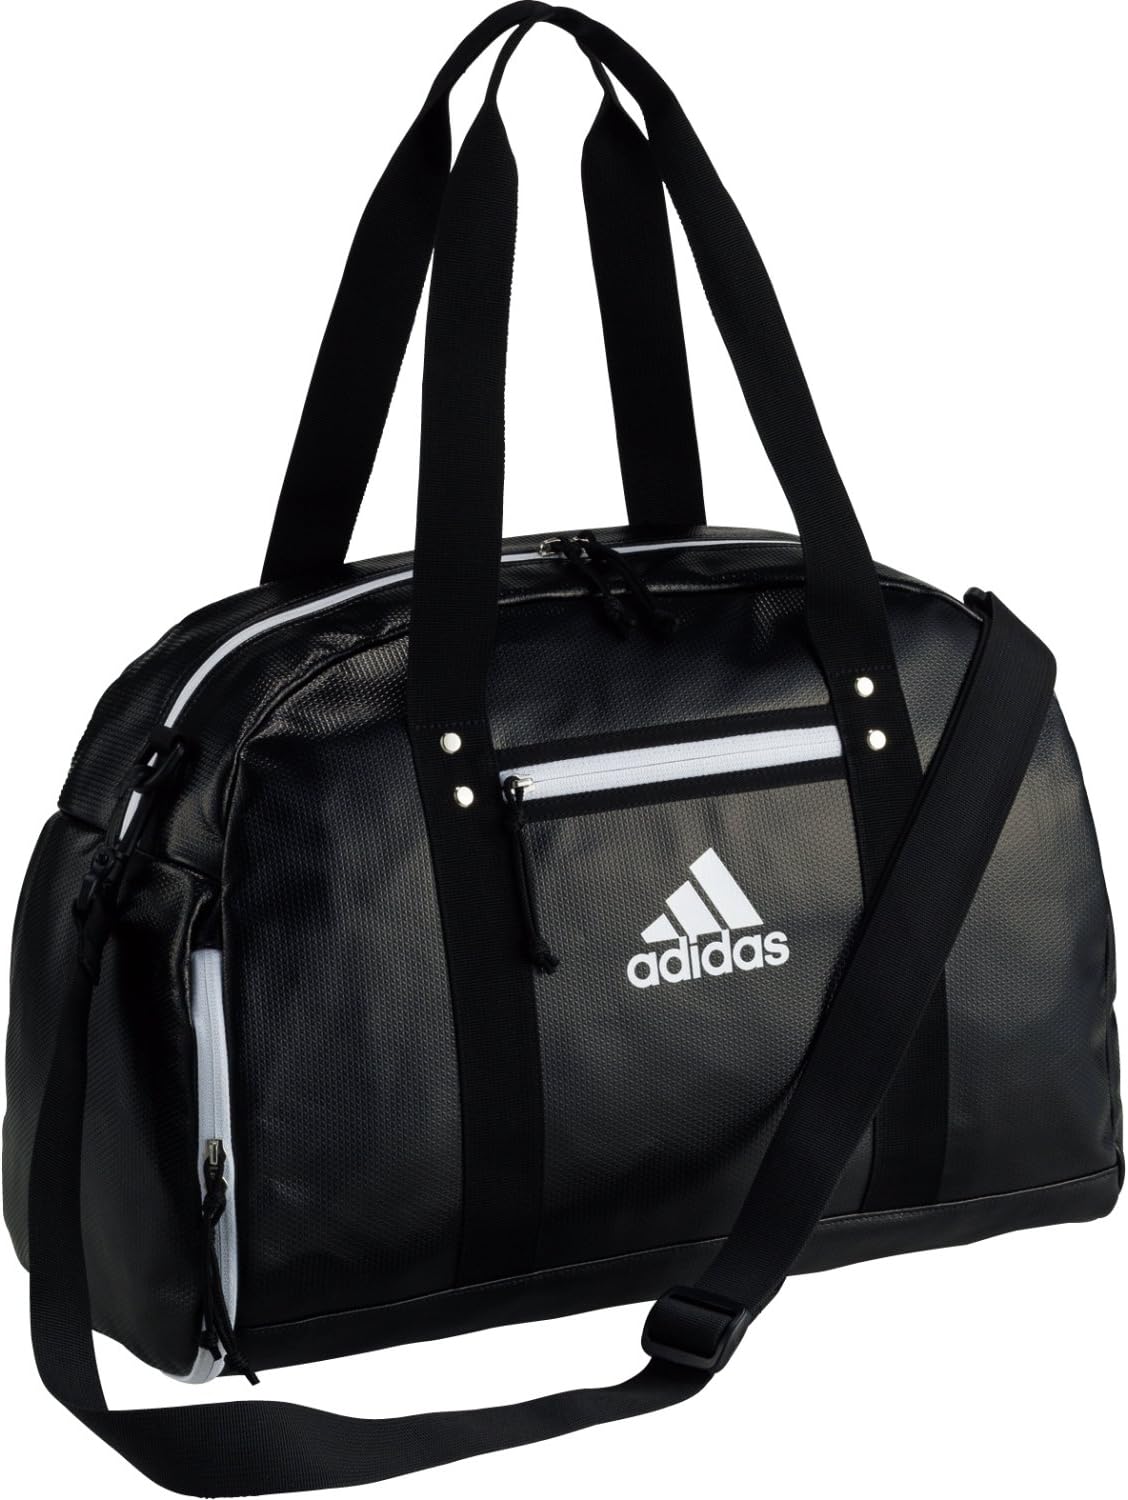  Adidas сумка "Boston bag" type мяч сумка ABB01 футбольный мяч кейс большая спортивная сумка водоотталкивающий Golf Jim 